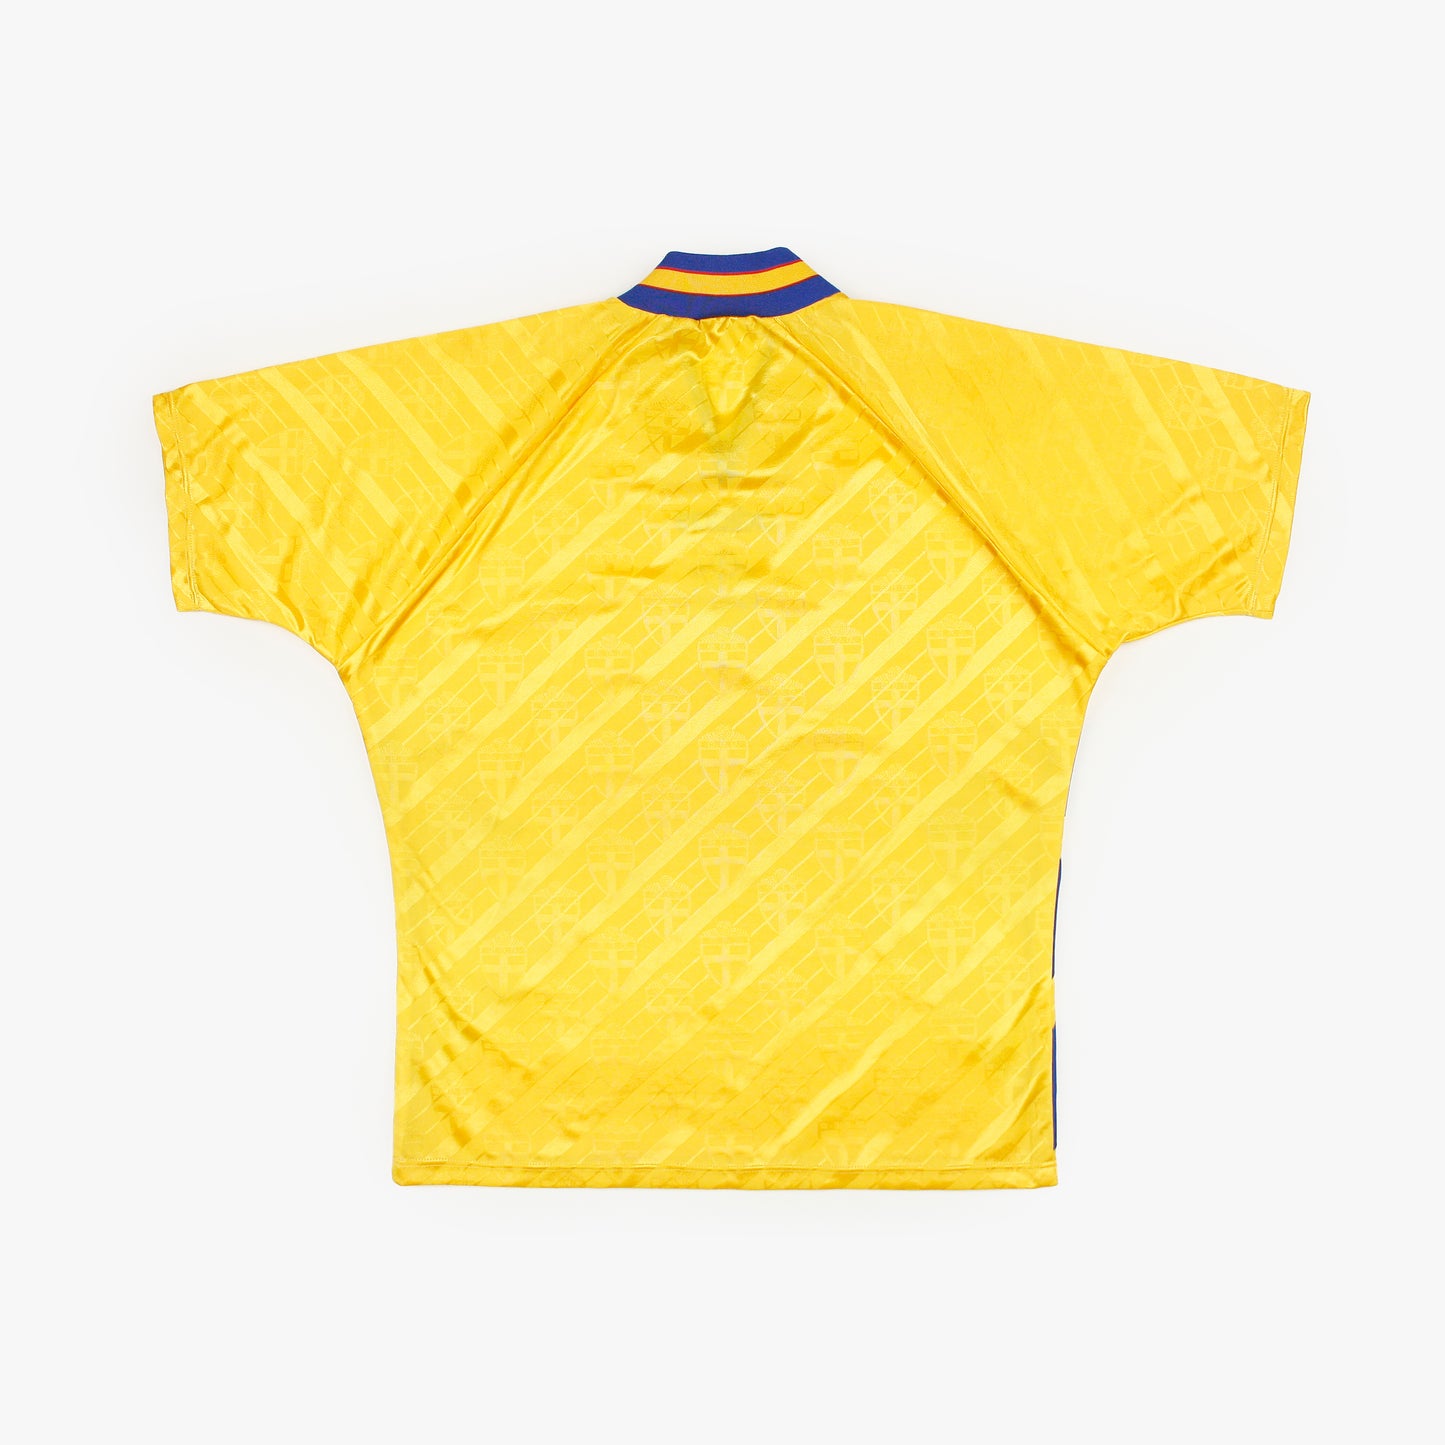 Suecia 94/96 • Camiseta Local • XL (L)